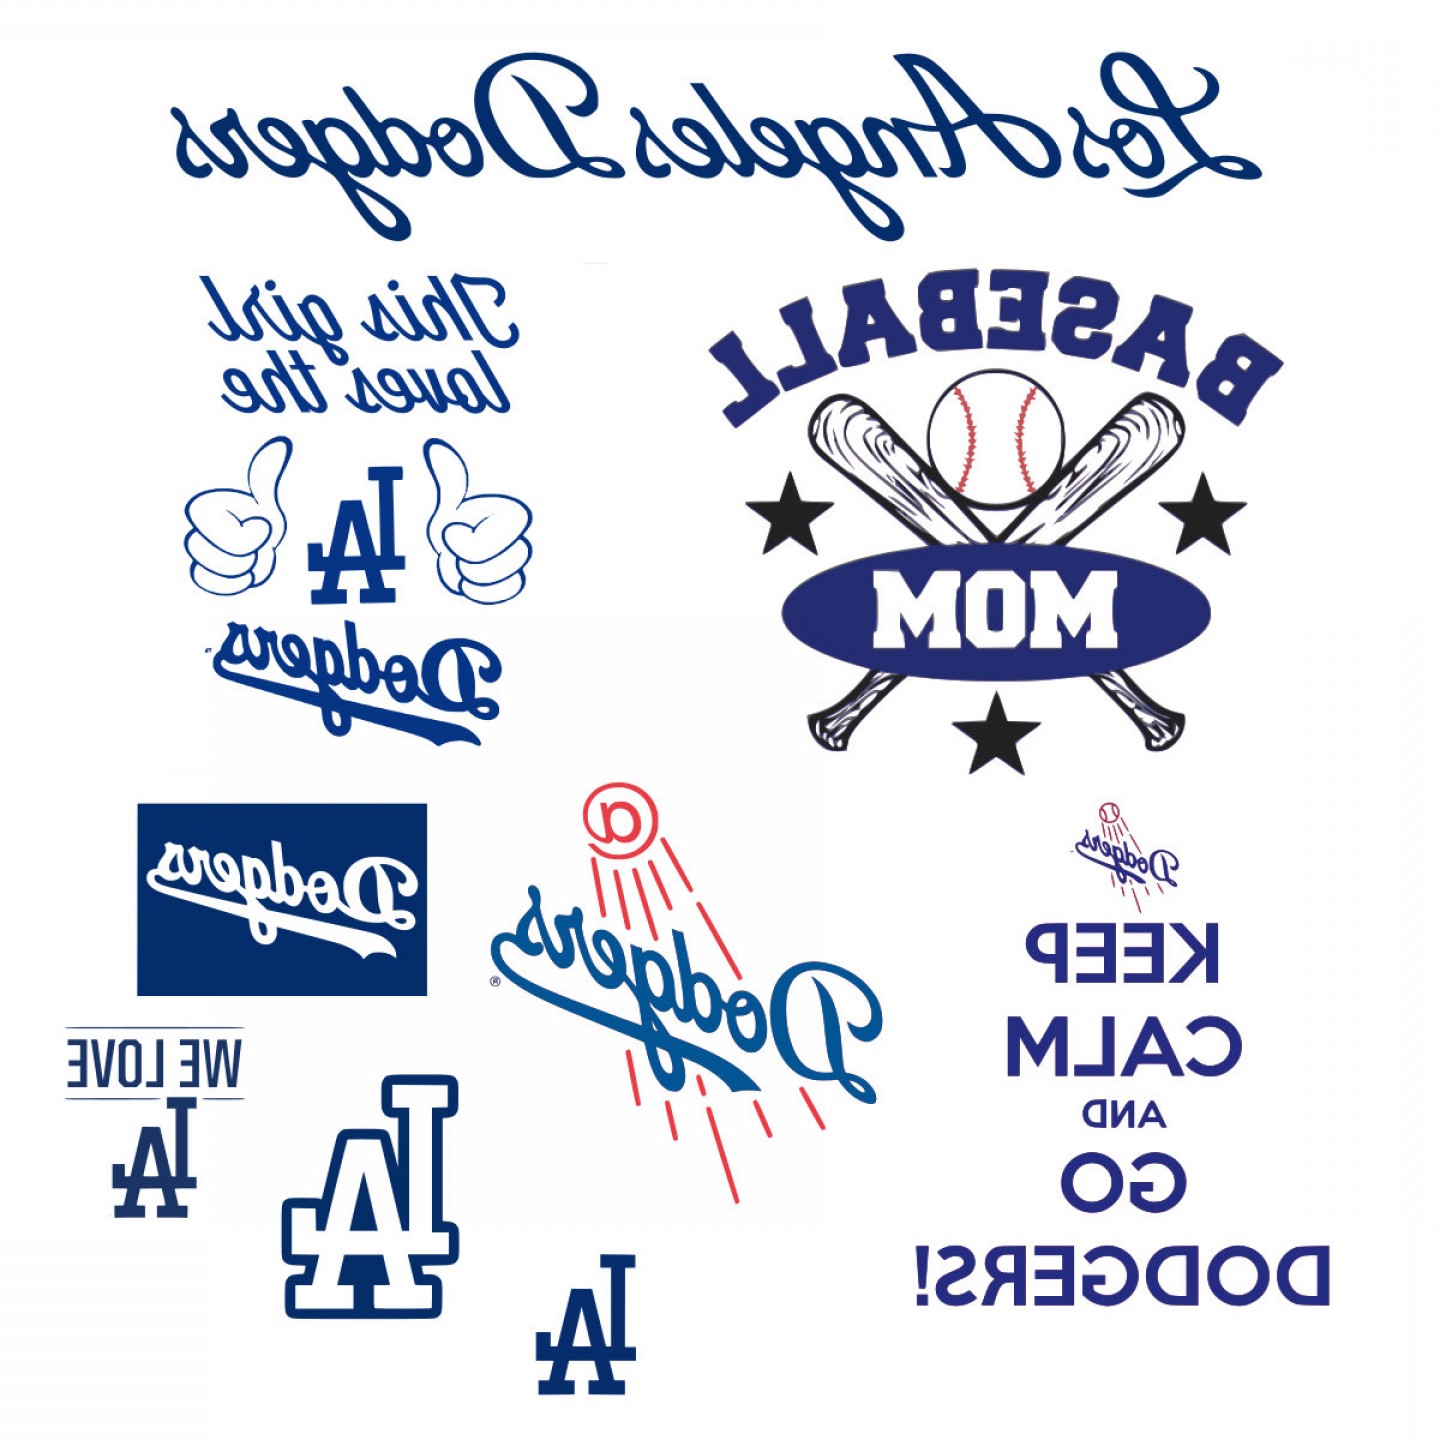 La Dodgers Los Angeles Dodgers Geekchicpro. 